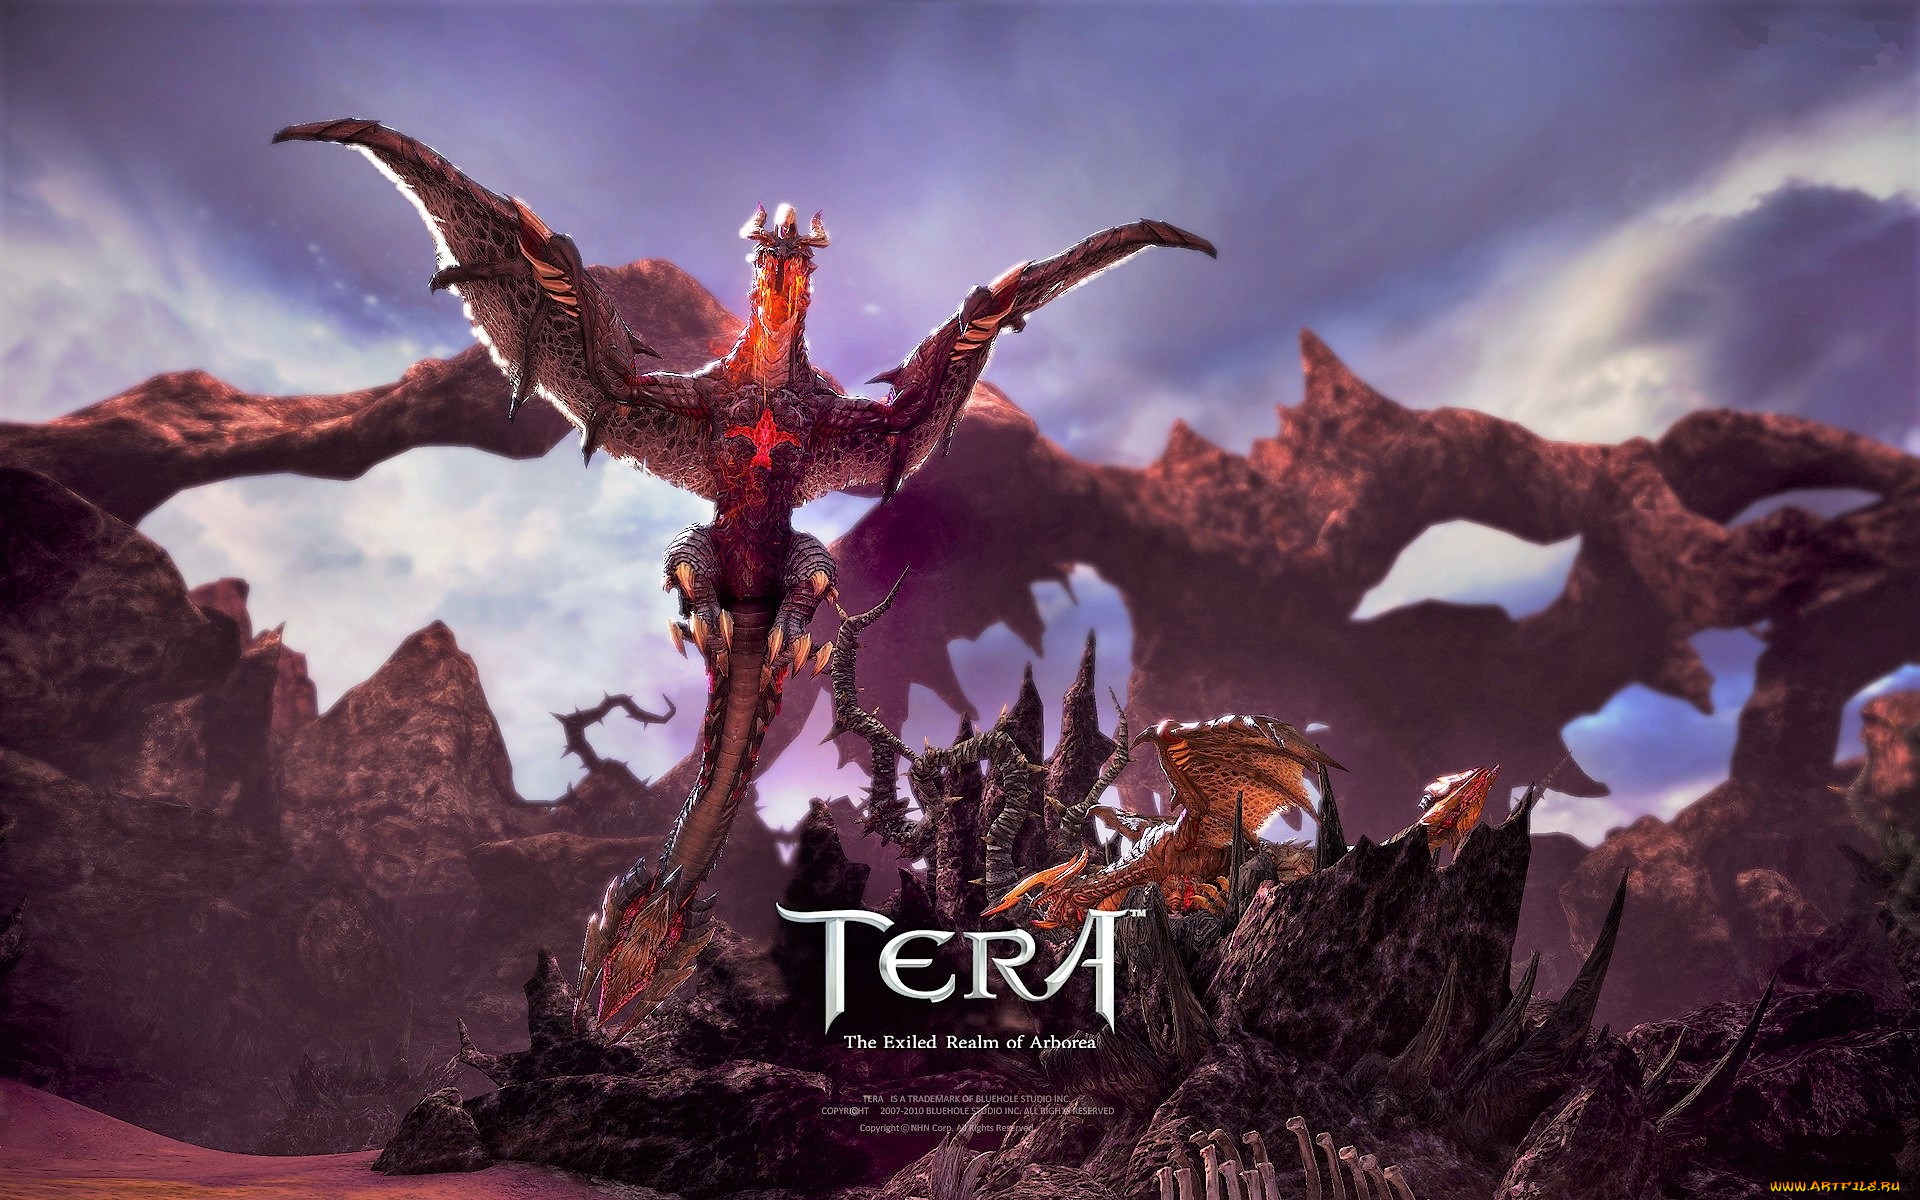 видео, игры, tera, , the, exiled, realm, of, arborea, драконы, скалы